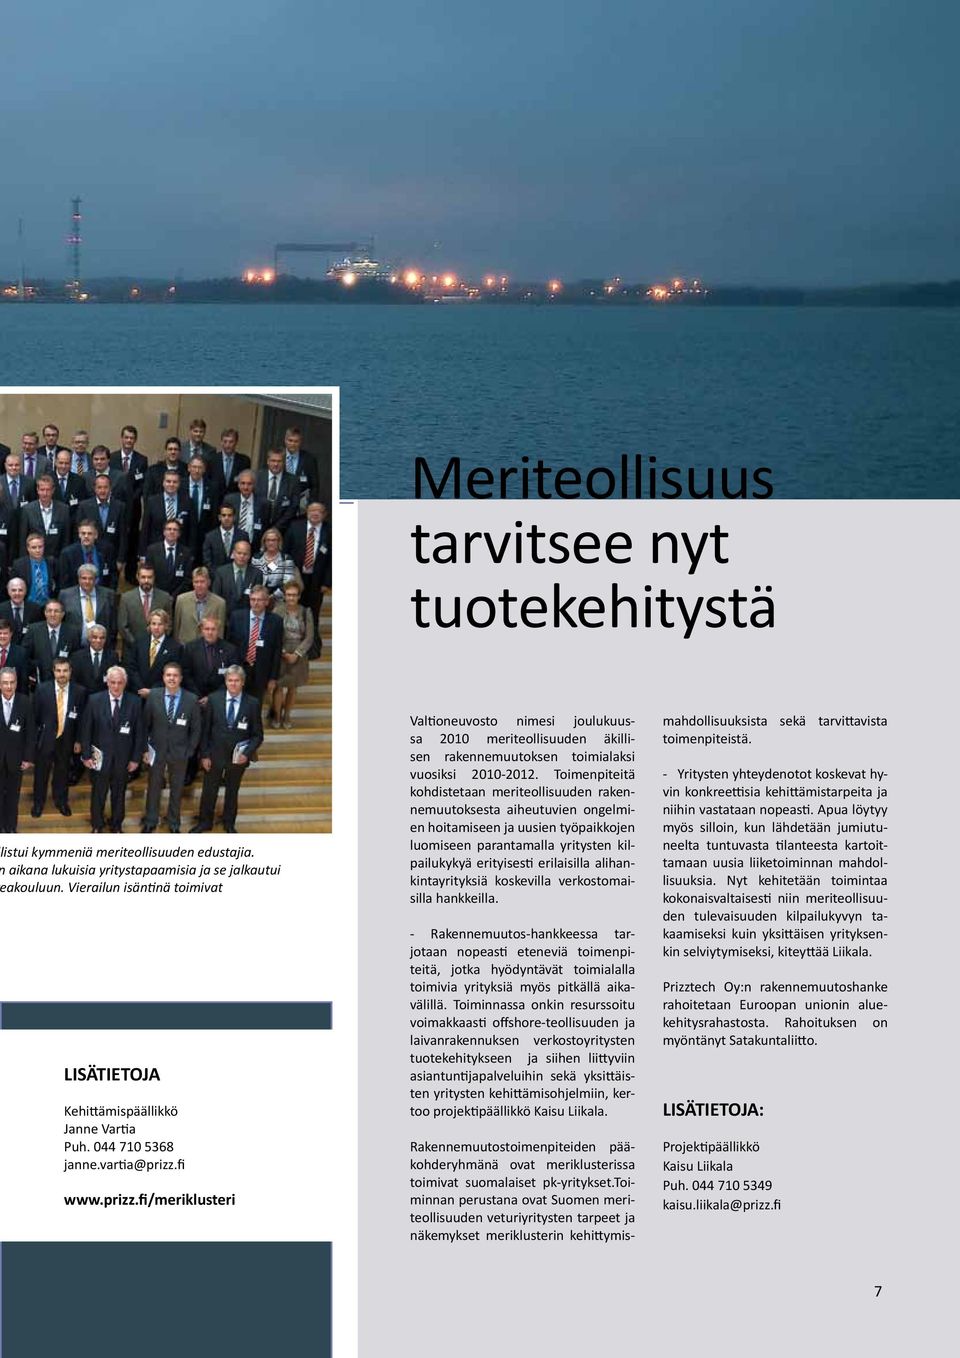 fi www.prizz.fi/meriklusteri Valtioneuvosto nimesi joulukuussa 2010 meriteollisuuden äkillisen rakennemuutoksen toimialaksi vuosiksi 2010-2012.